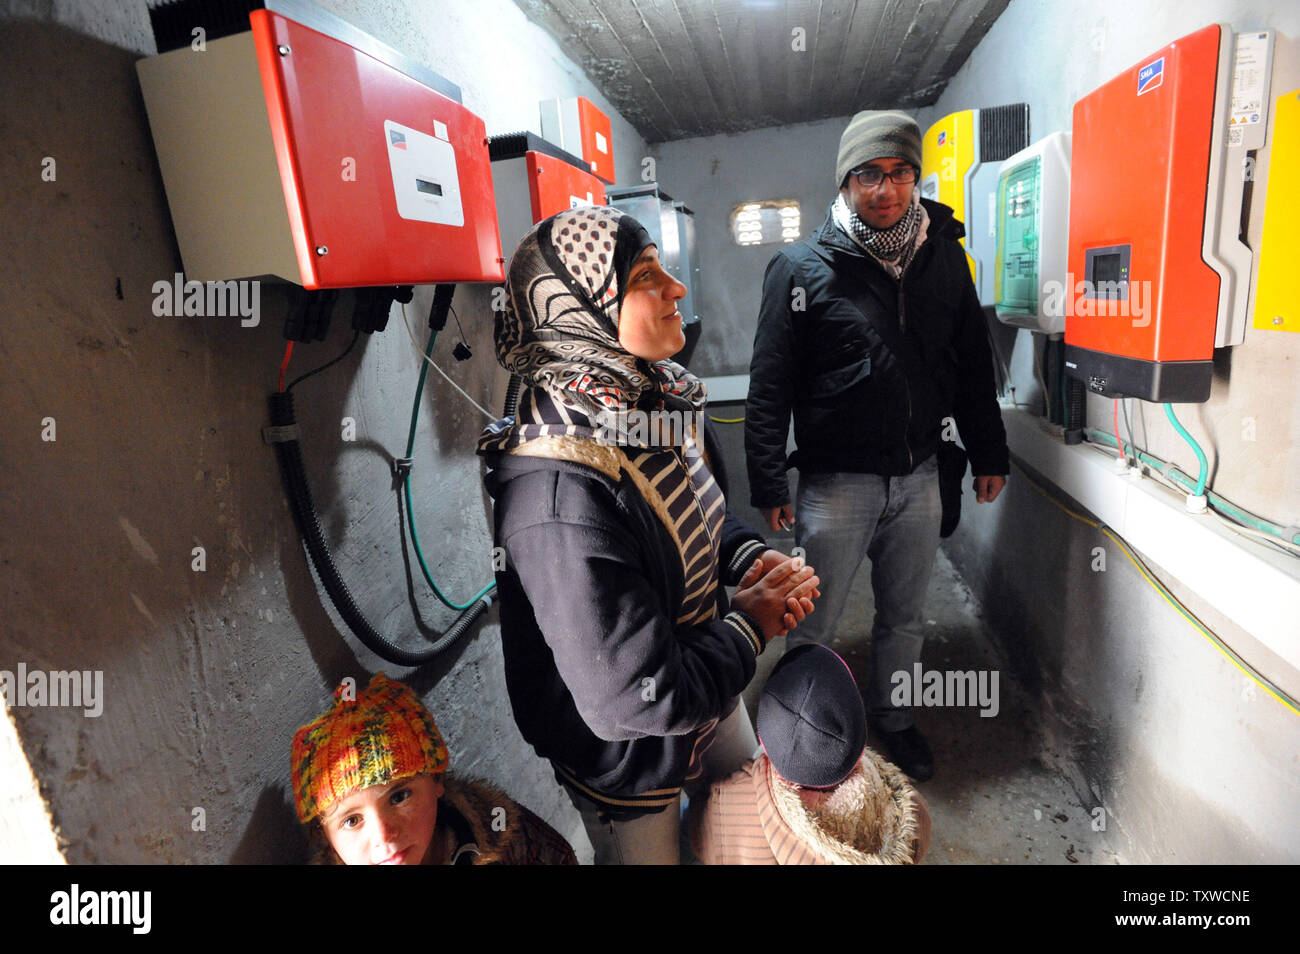 Regardez les Palestiniens des boîtes d'électricité facturés par des panneaux solaires et éoliennes dans l'Elle El-Buttum b village dans les collines au sud d'Hébron, en Cisjordanie, le 29 février 2012. L'Administration civile israélienne a émis des ordres de démolition pour les installations d'énergie renouvelable de panneaux solaires et éoliennes qui fournissent l'électricité aux Palestiniens qu'Israël refuse de raccorder au réseau d'électricité. Les installations de l'énergie ont été payées par le ministère allemand des Affaires étrangères et à l'initiative de bénévoles israéliens. L'électricité par les panneaux solaires et éoliennes a révolutionner Banque D'Images